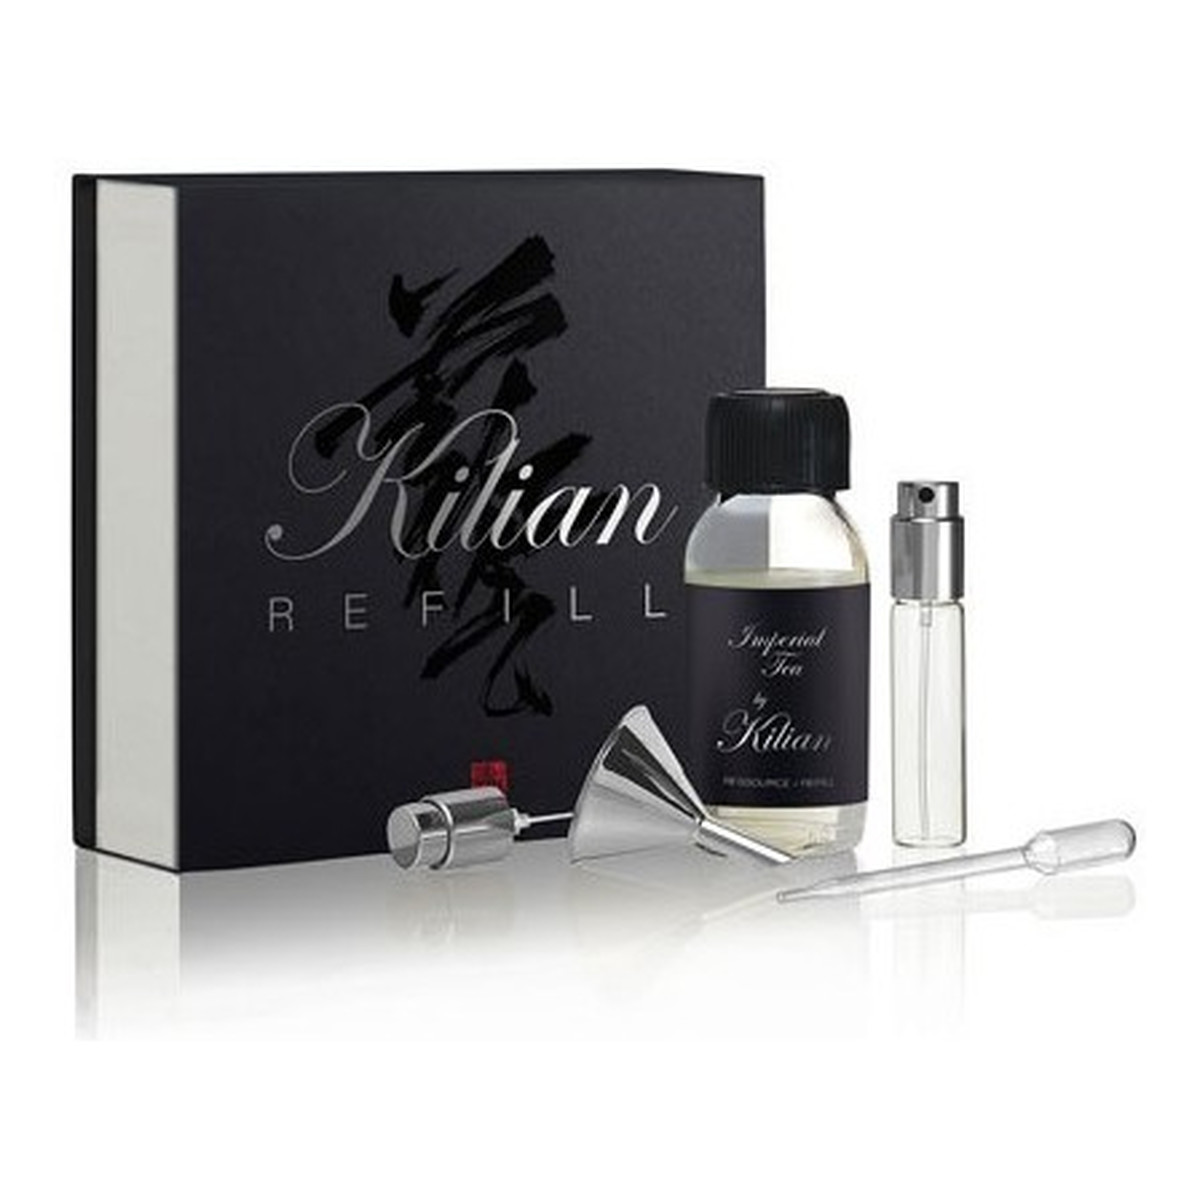 By Kilian Imperial Tea Woda perfumowana spray wkład 50ml